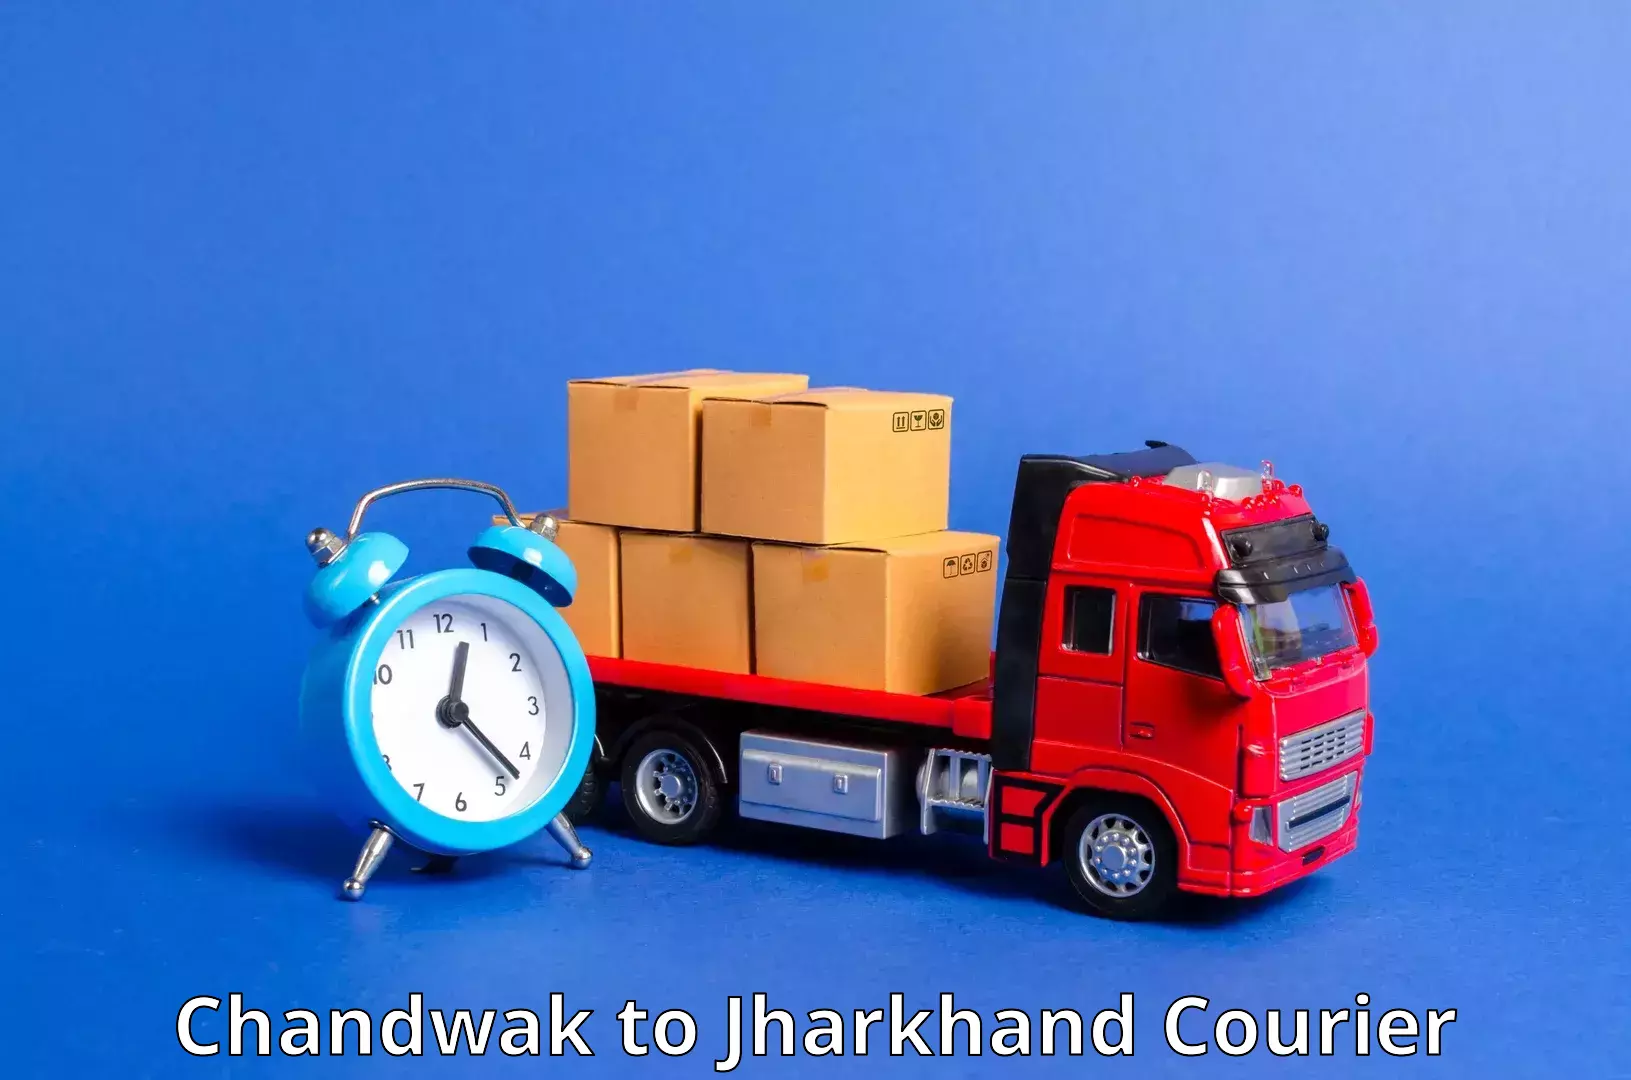 Budget-friendly shipping Chandwak to Dhalbhumgarh